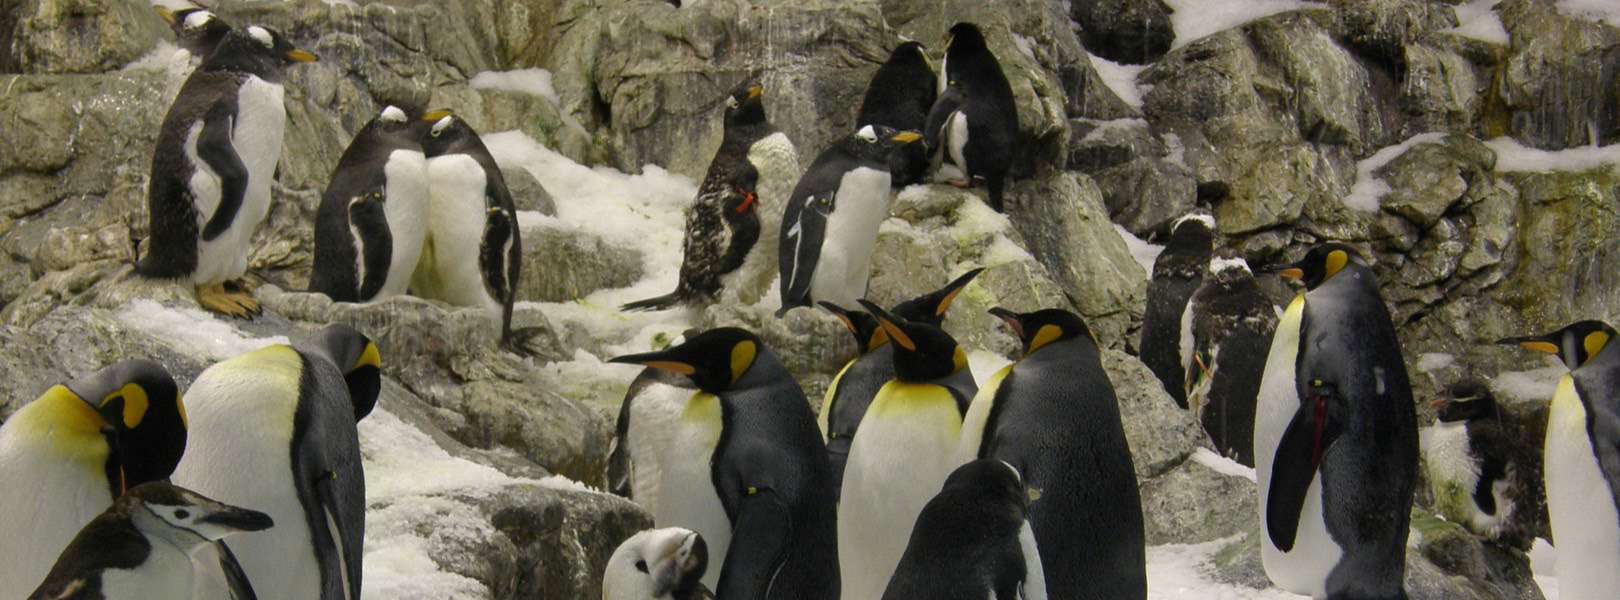 Pinguine im Loro Parque auf Teneriffa in Spanien